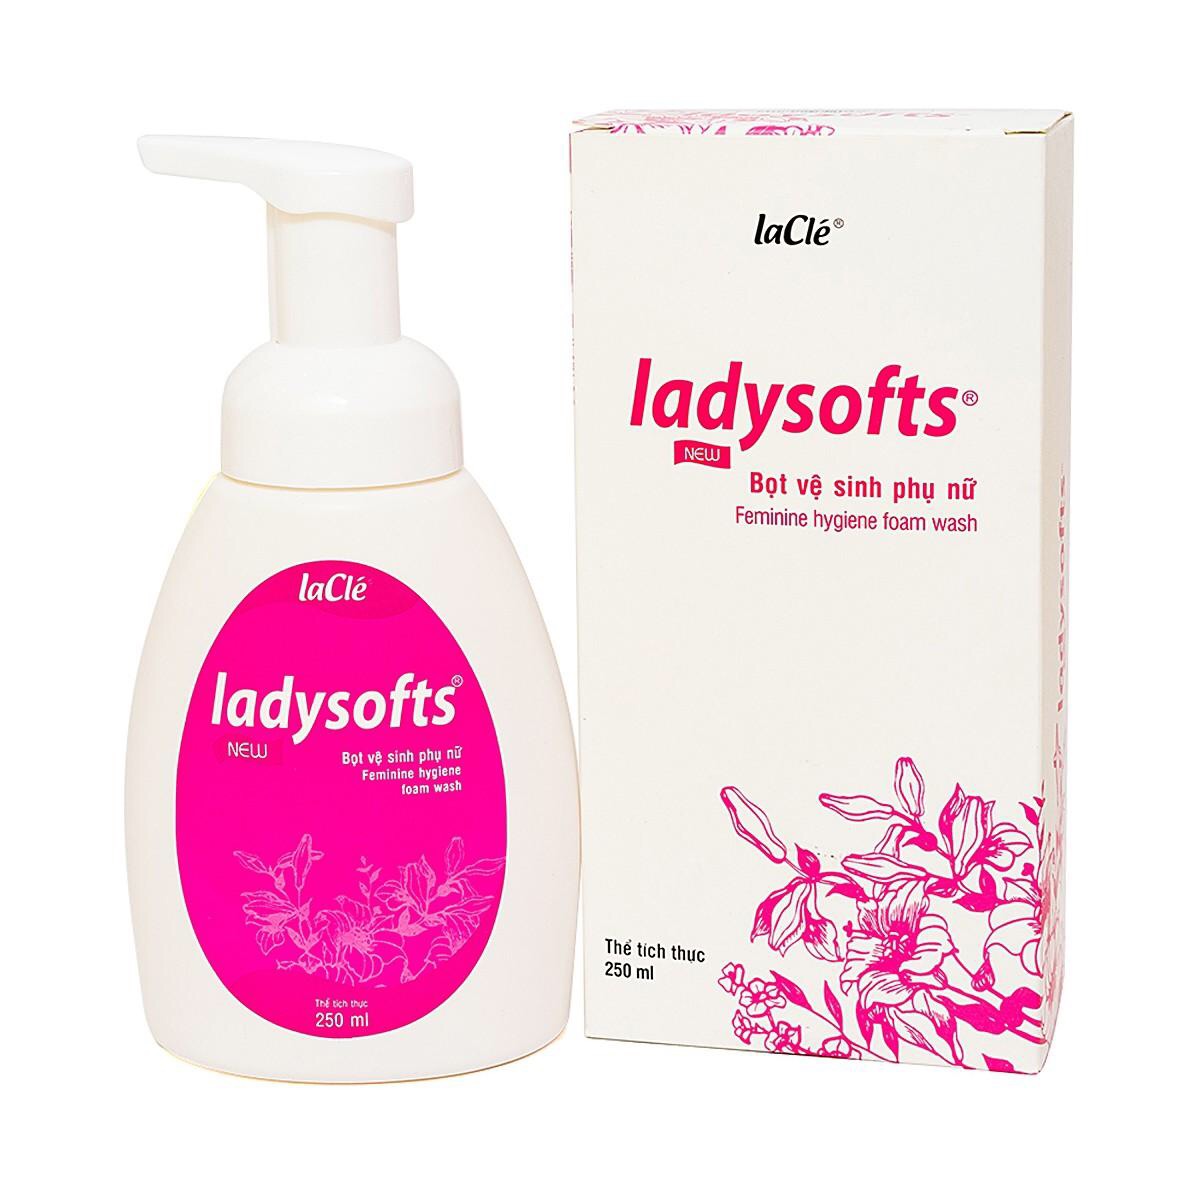 Bọt vệ sinh phụ nữ Ladysoft Feminine Hygiene laCle làm sạch, duy trì pH